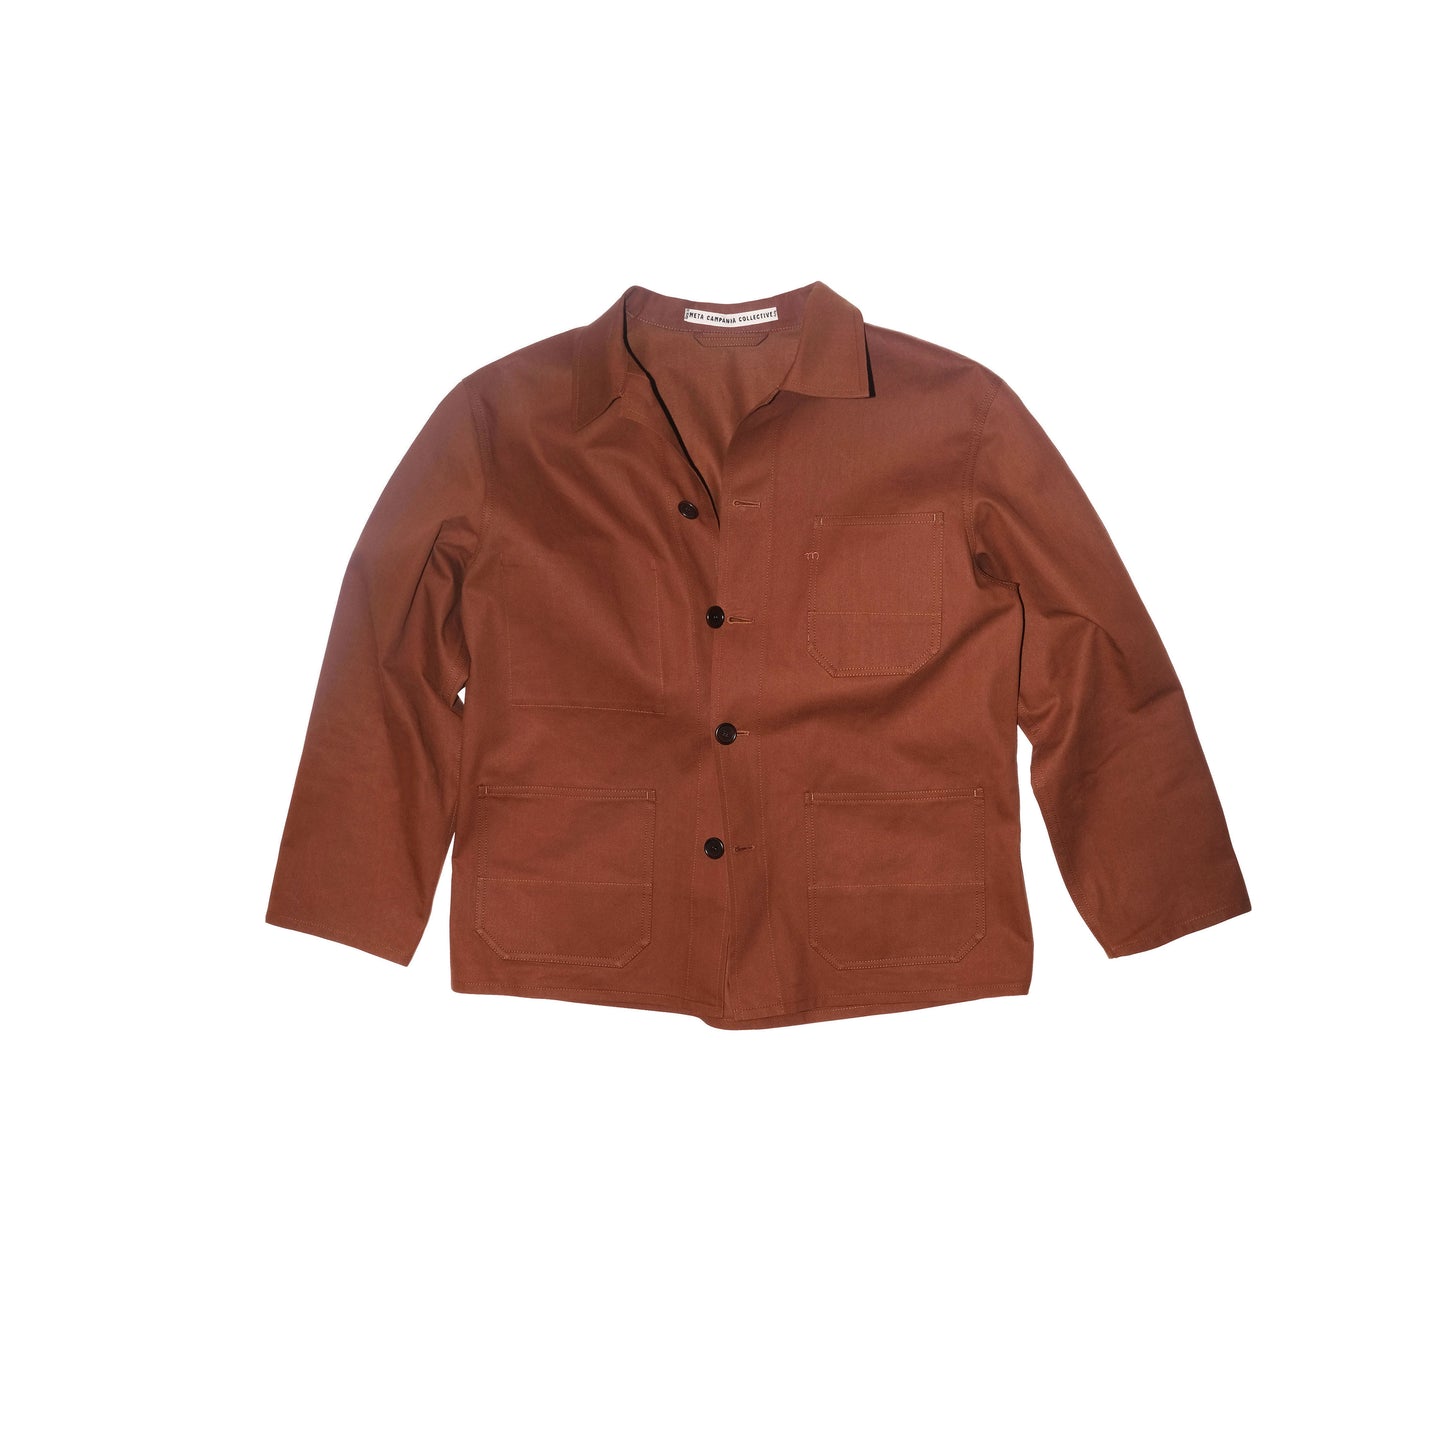 Bill Unlined Workwear Jacket Rust Brown